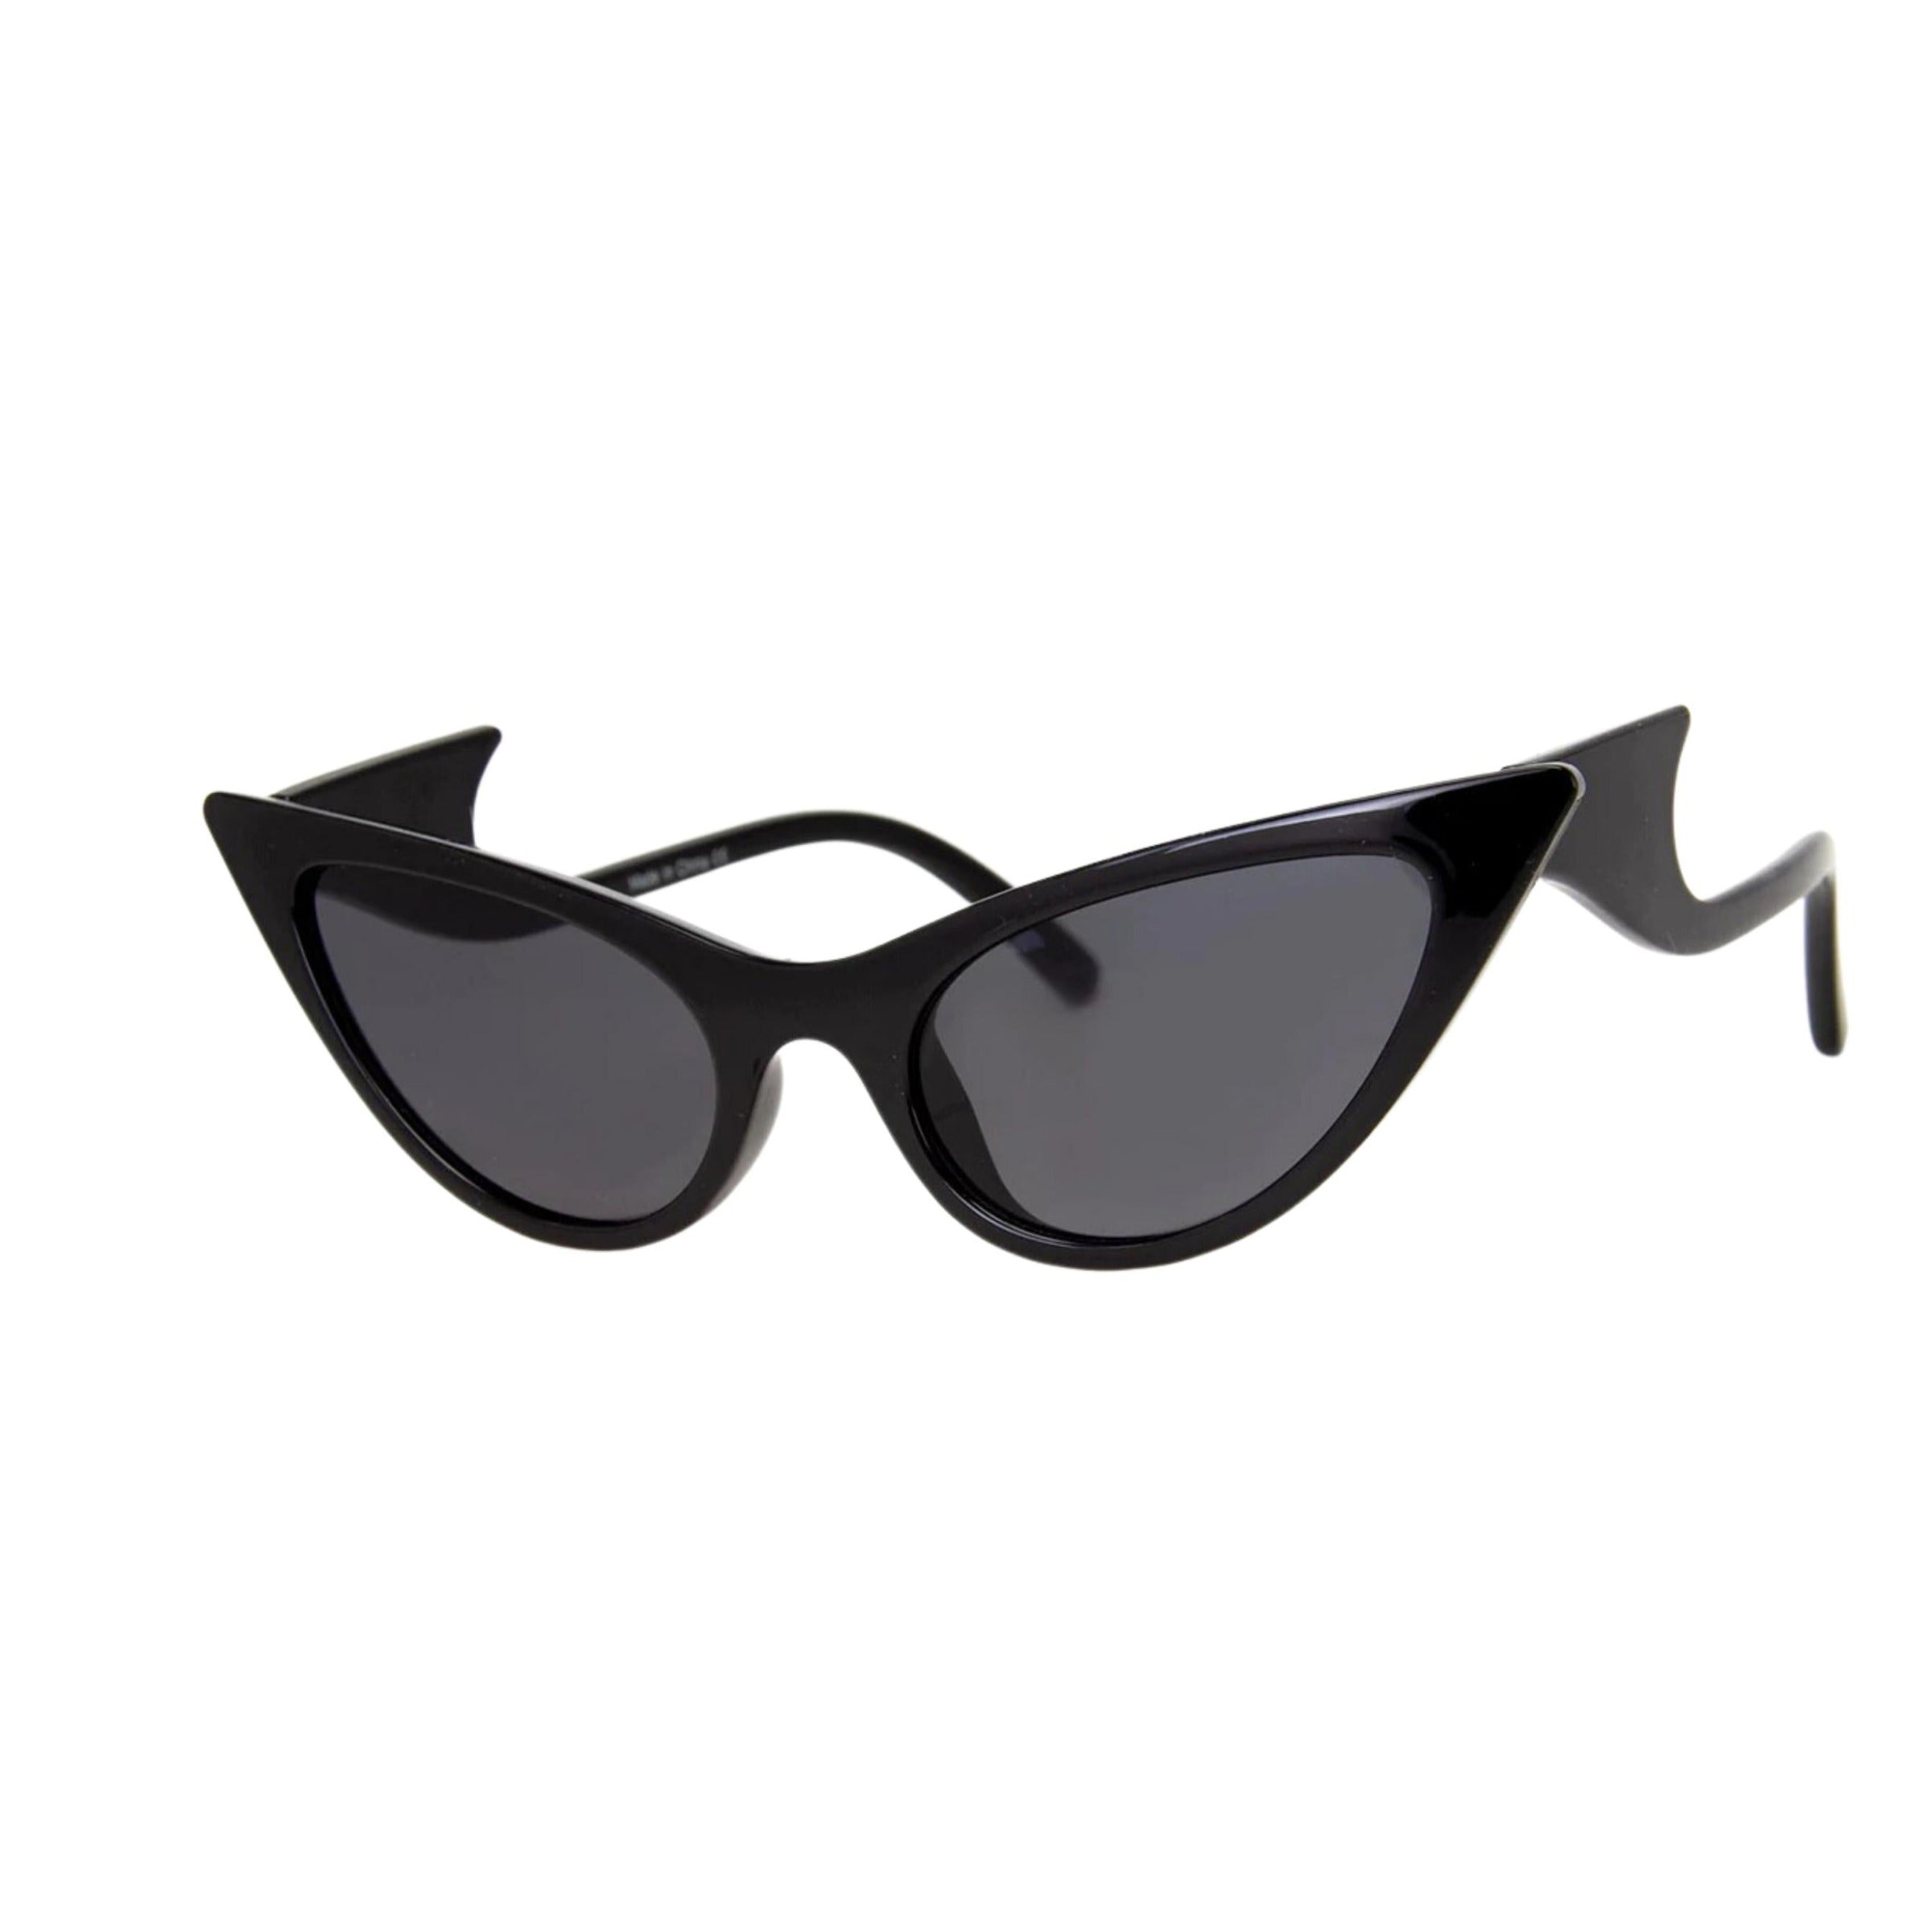 Future Mania Sunglasses